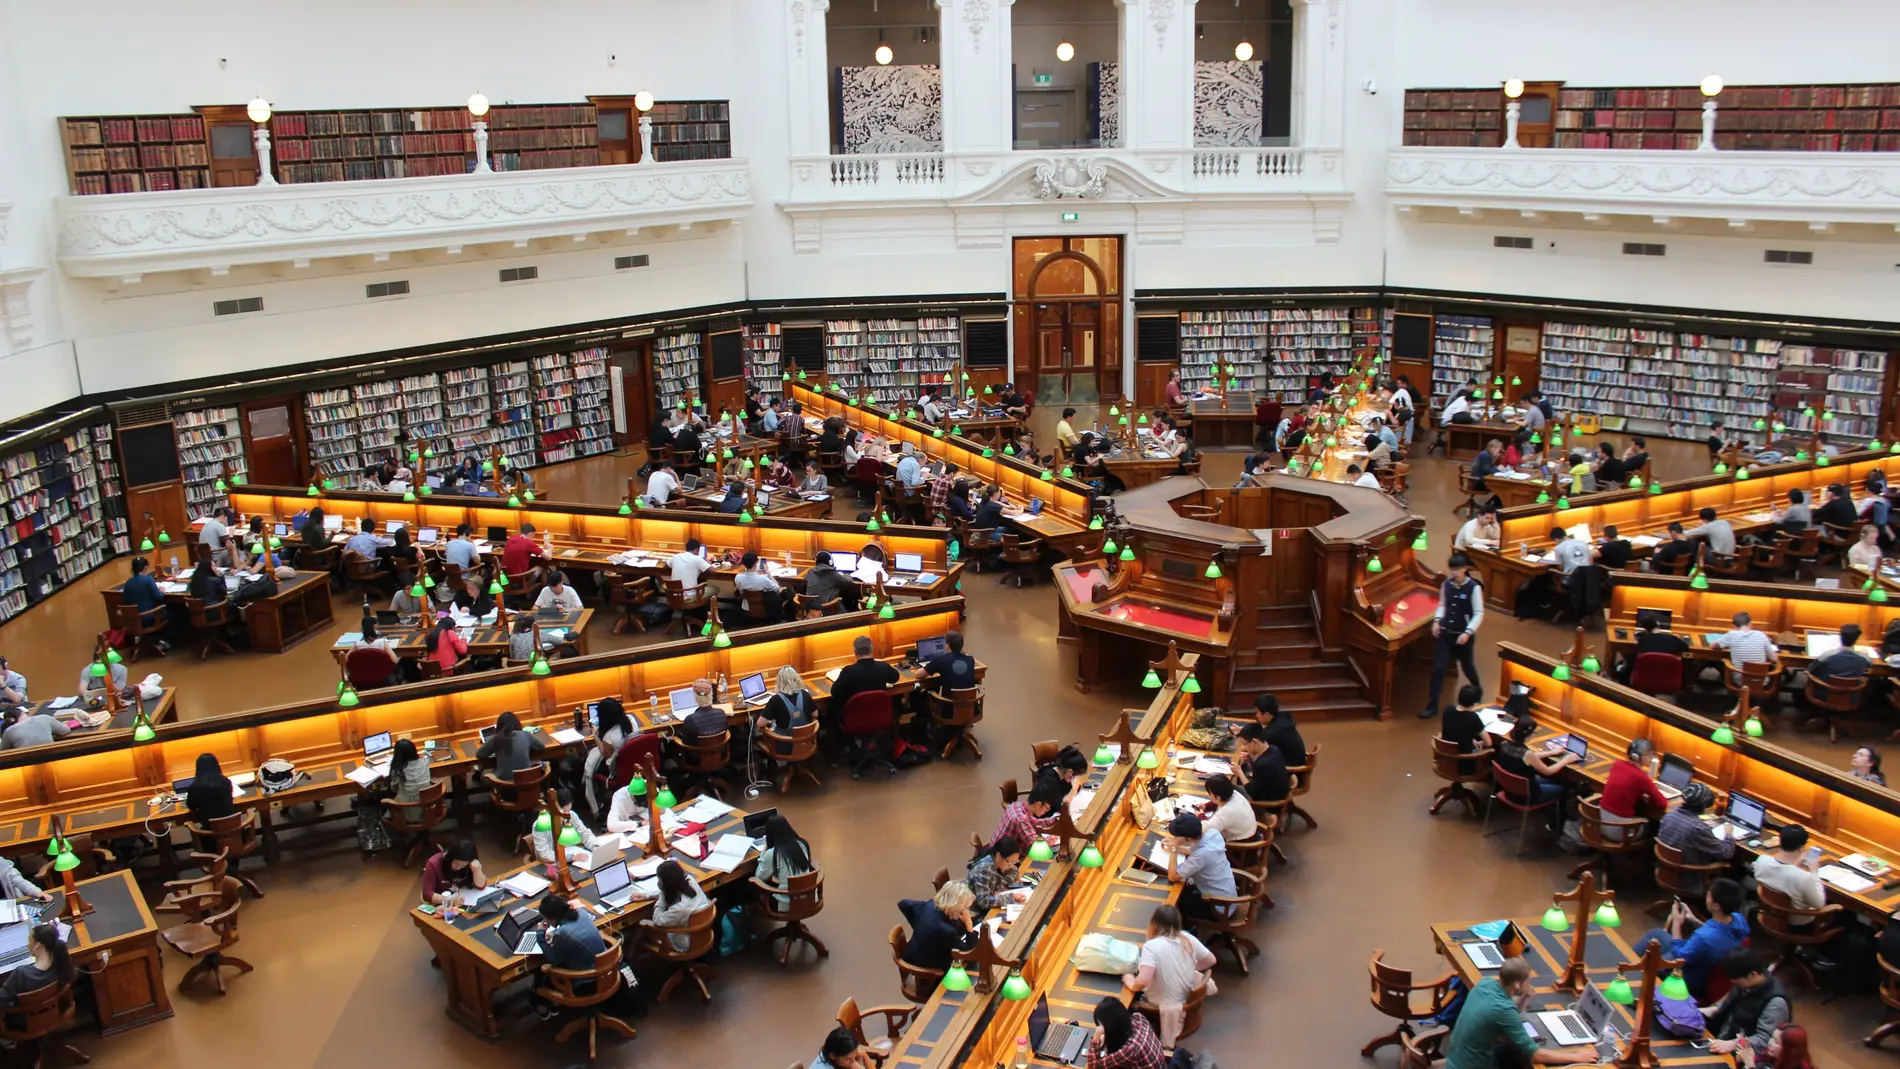 Estudiantes universitarios en una biblioteca.